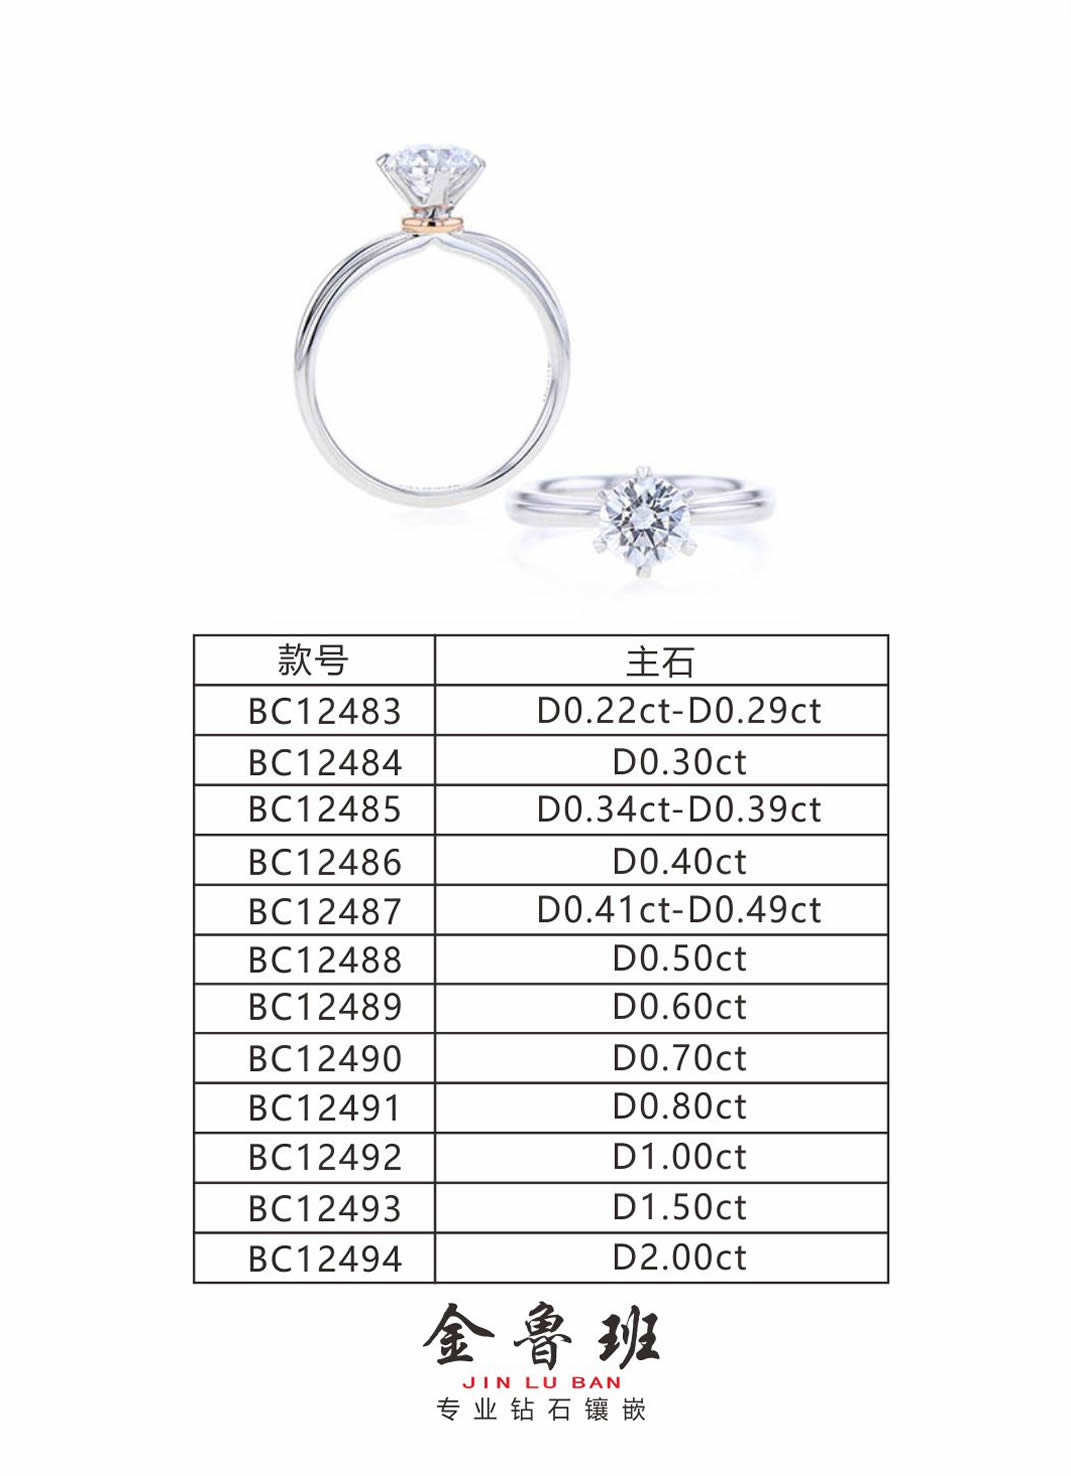 BC12487女戒-金鲁班珠宝网上版房-黄金珠宝制造商-0755-28998888